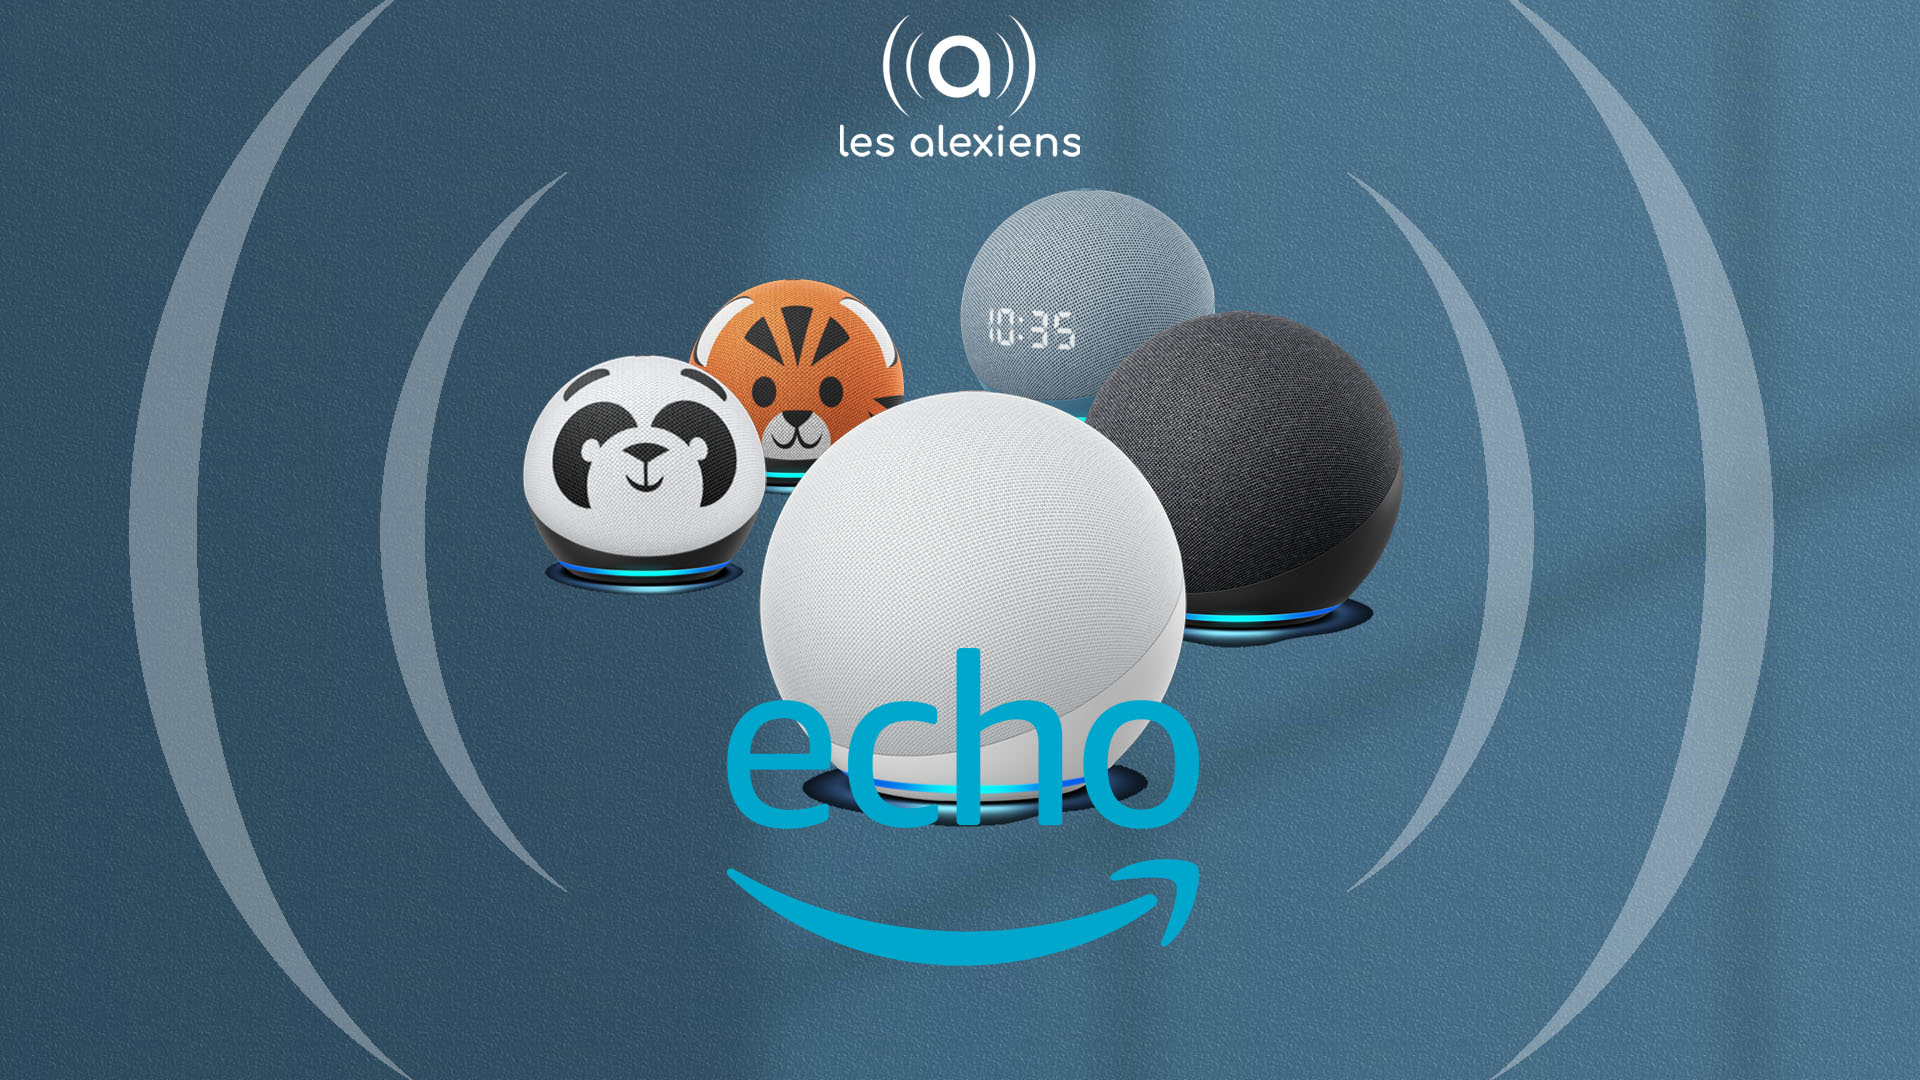 Echo 4 et Echo Dot 4 : deux nouveaux modèles surprenants ! – Les  Alexiens